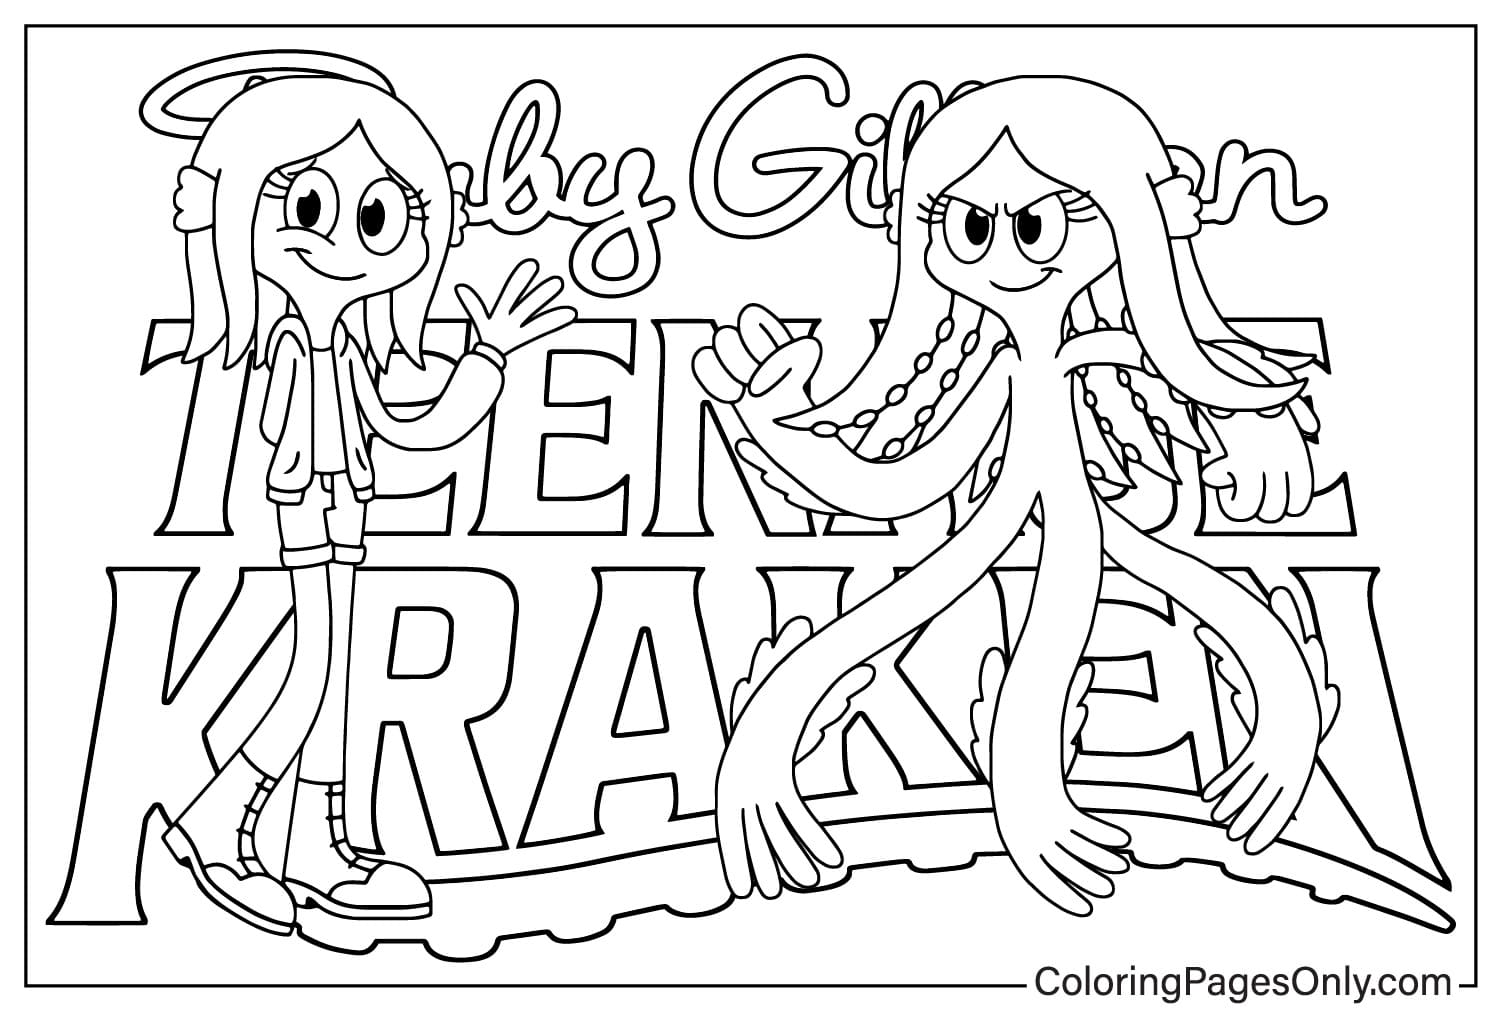 Ruby Gillman Teenage Kraken Malvorlage zum Ausdrucken von Ruby Gillman Teenage Kraken